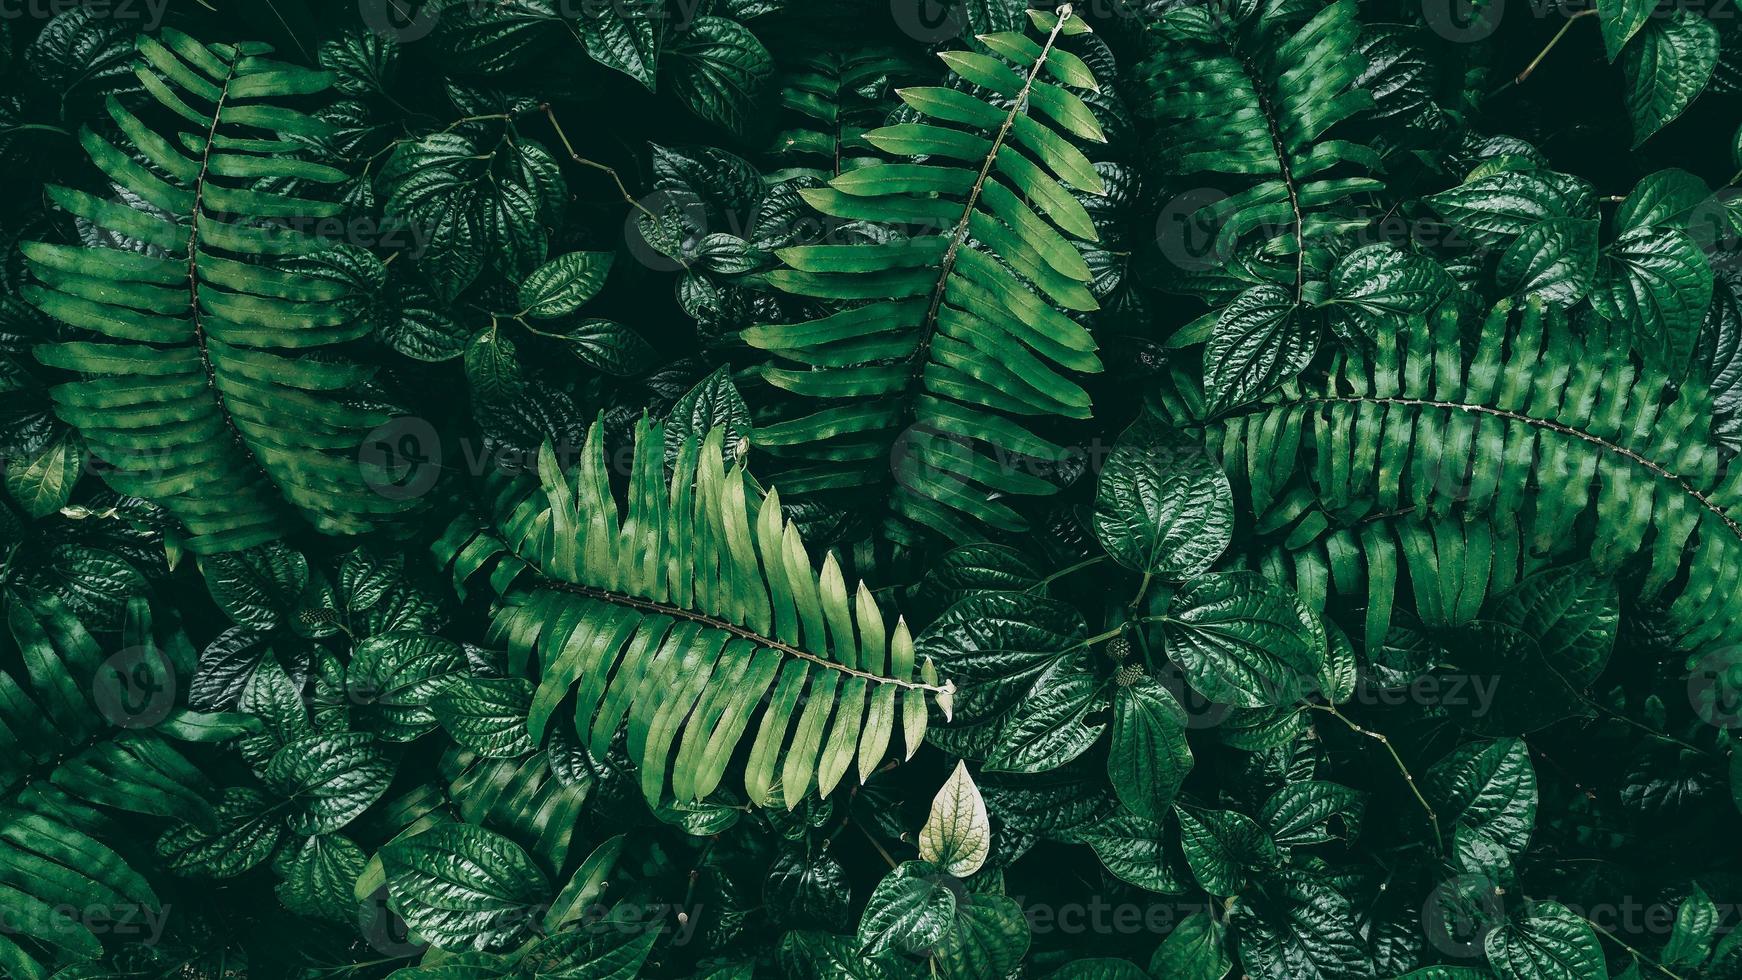 Tropical green leaf in dark tone photo